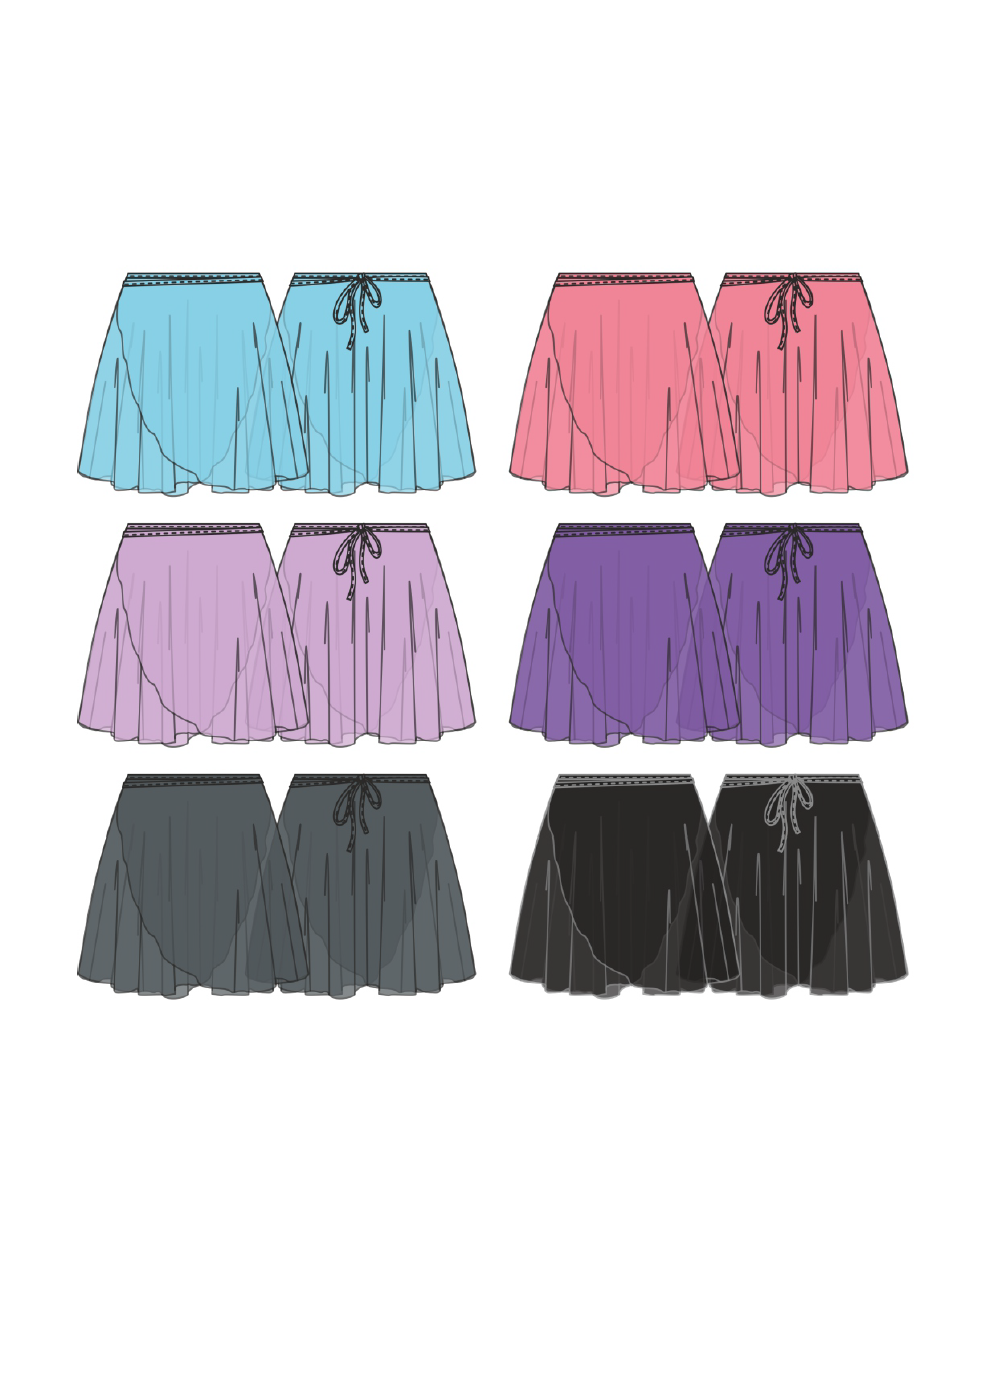 グリシコ バウンドレス コレクション ピア メッシュスカート 【子供】全5色 Grishko Boundless Collection PIA Mesh skirt